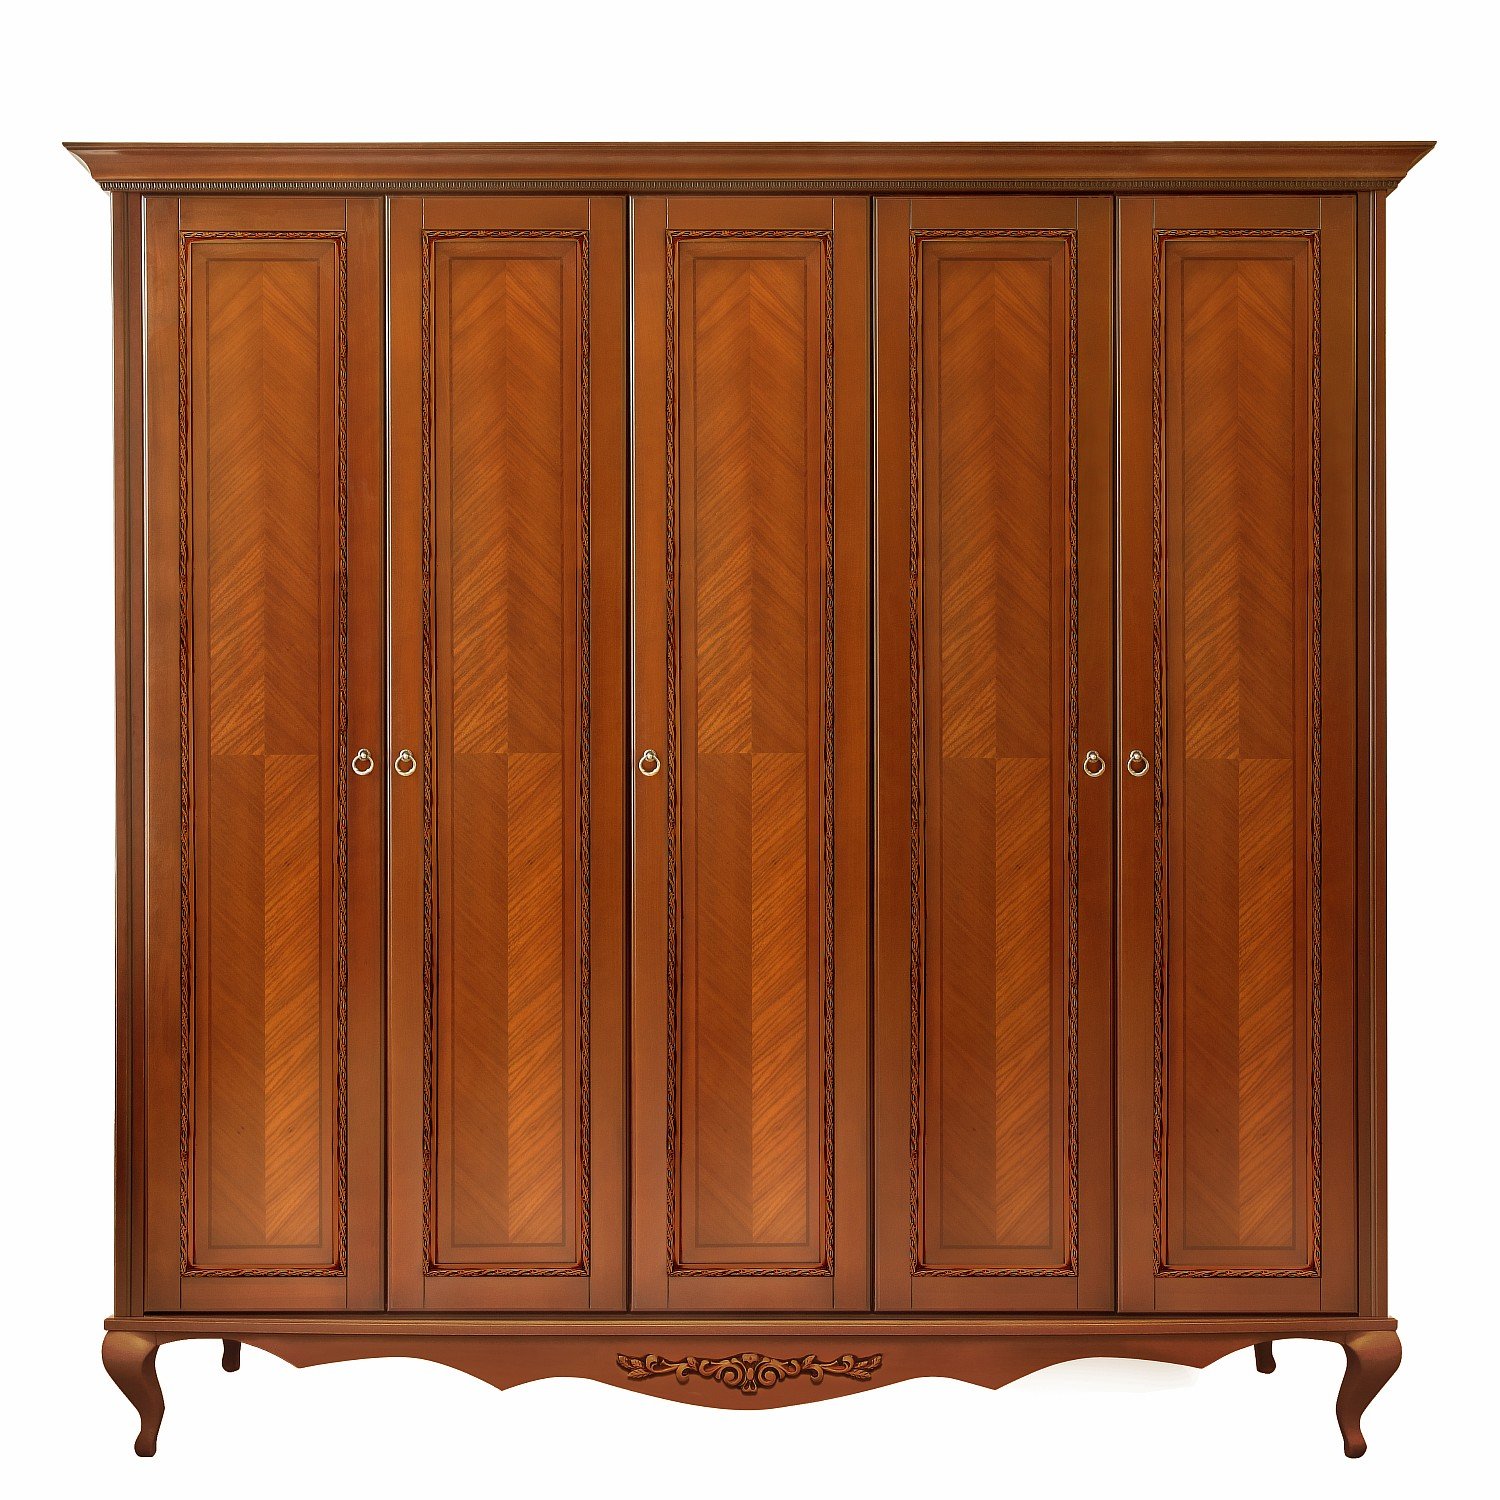 Шкаф платяной Timber Неаполь, 5-ти дверный 249x65x227 см цвет: янтарь (T-525Д)T-525Д